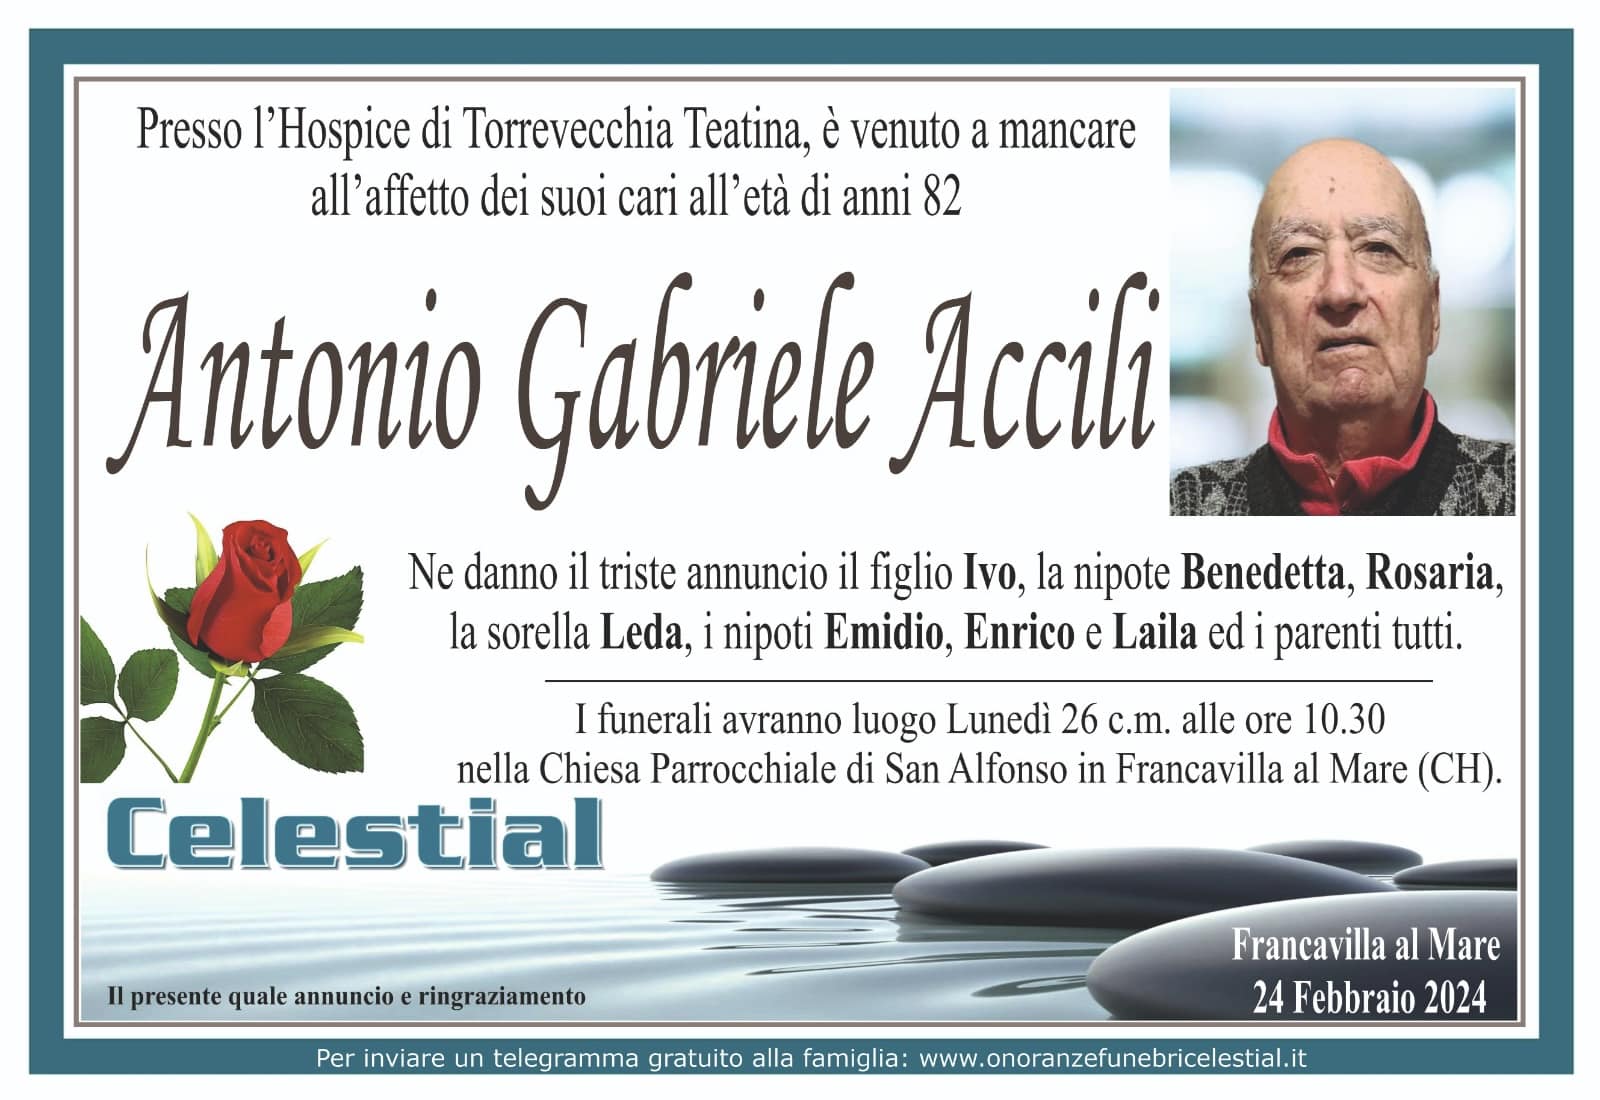 Antonio Gabriele Accili